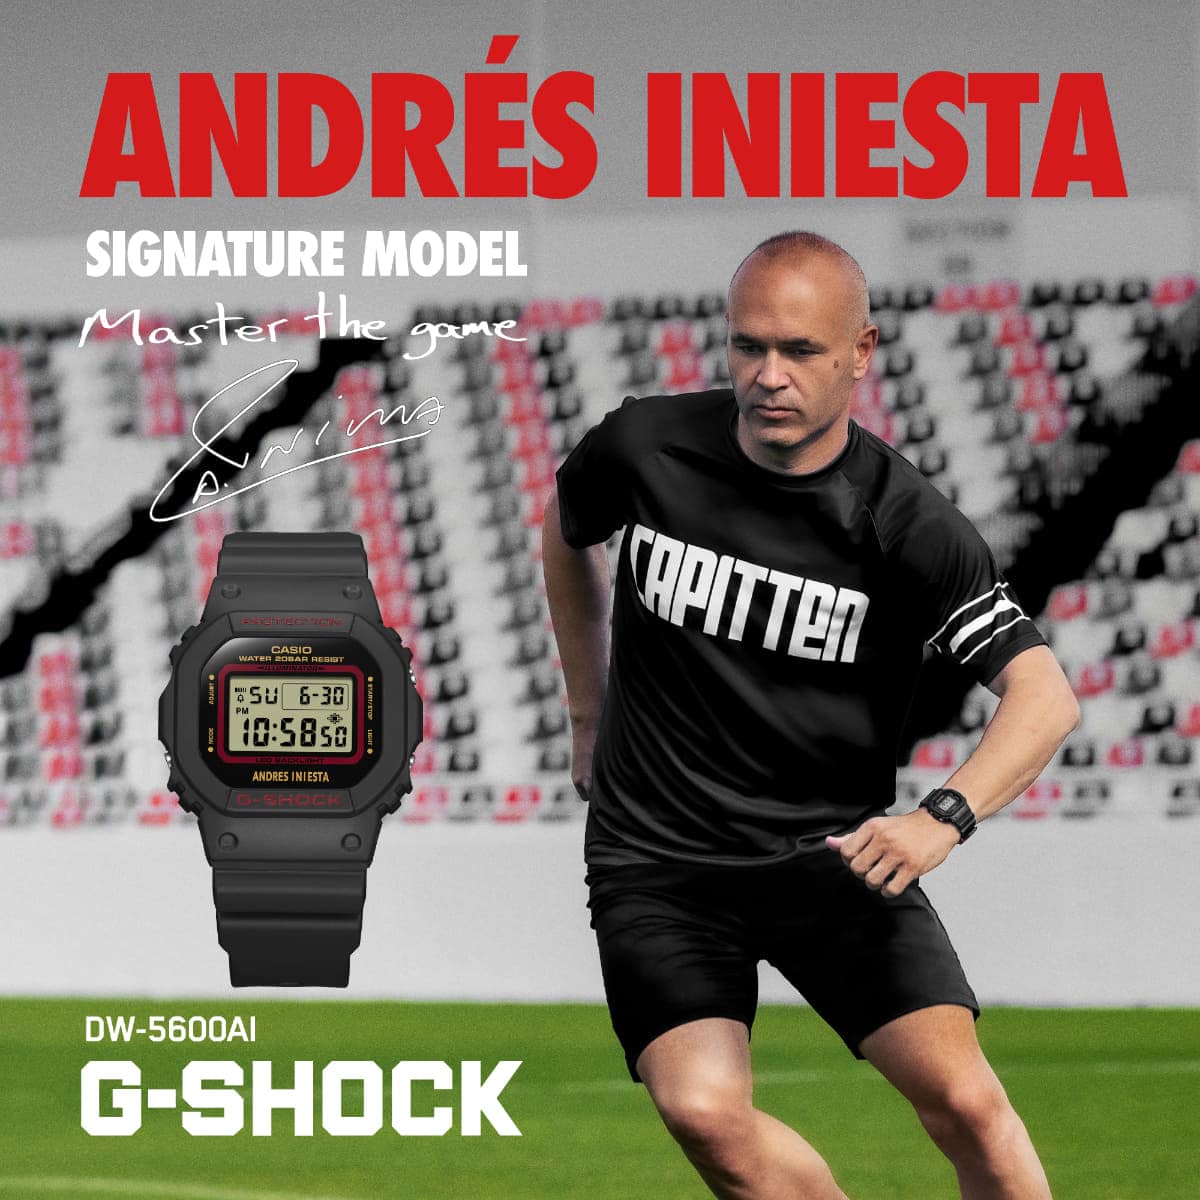 【G-SHOCK限定モデル】サッカー・イニエスタ選手のシグネチャーモデルをローンチ